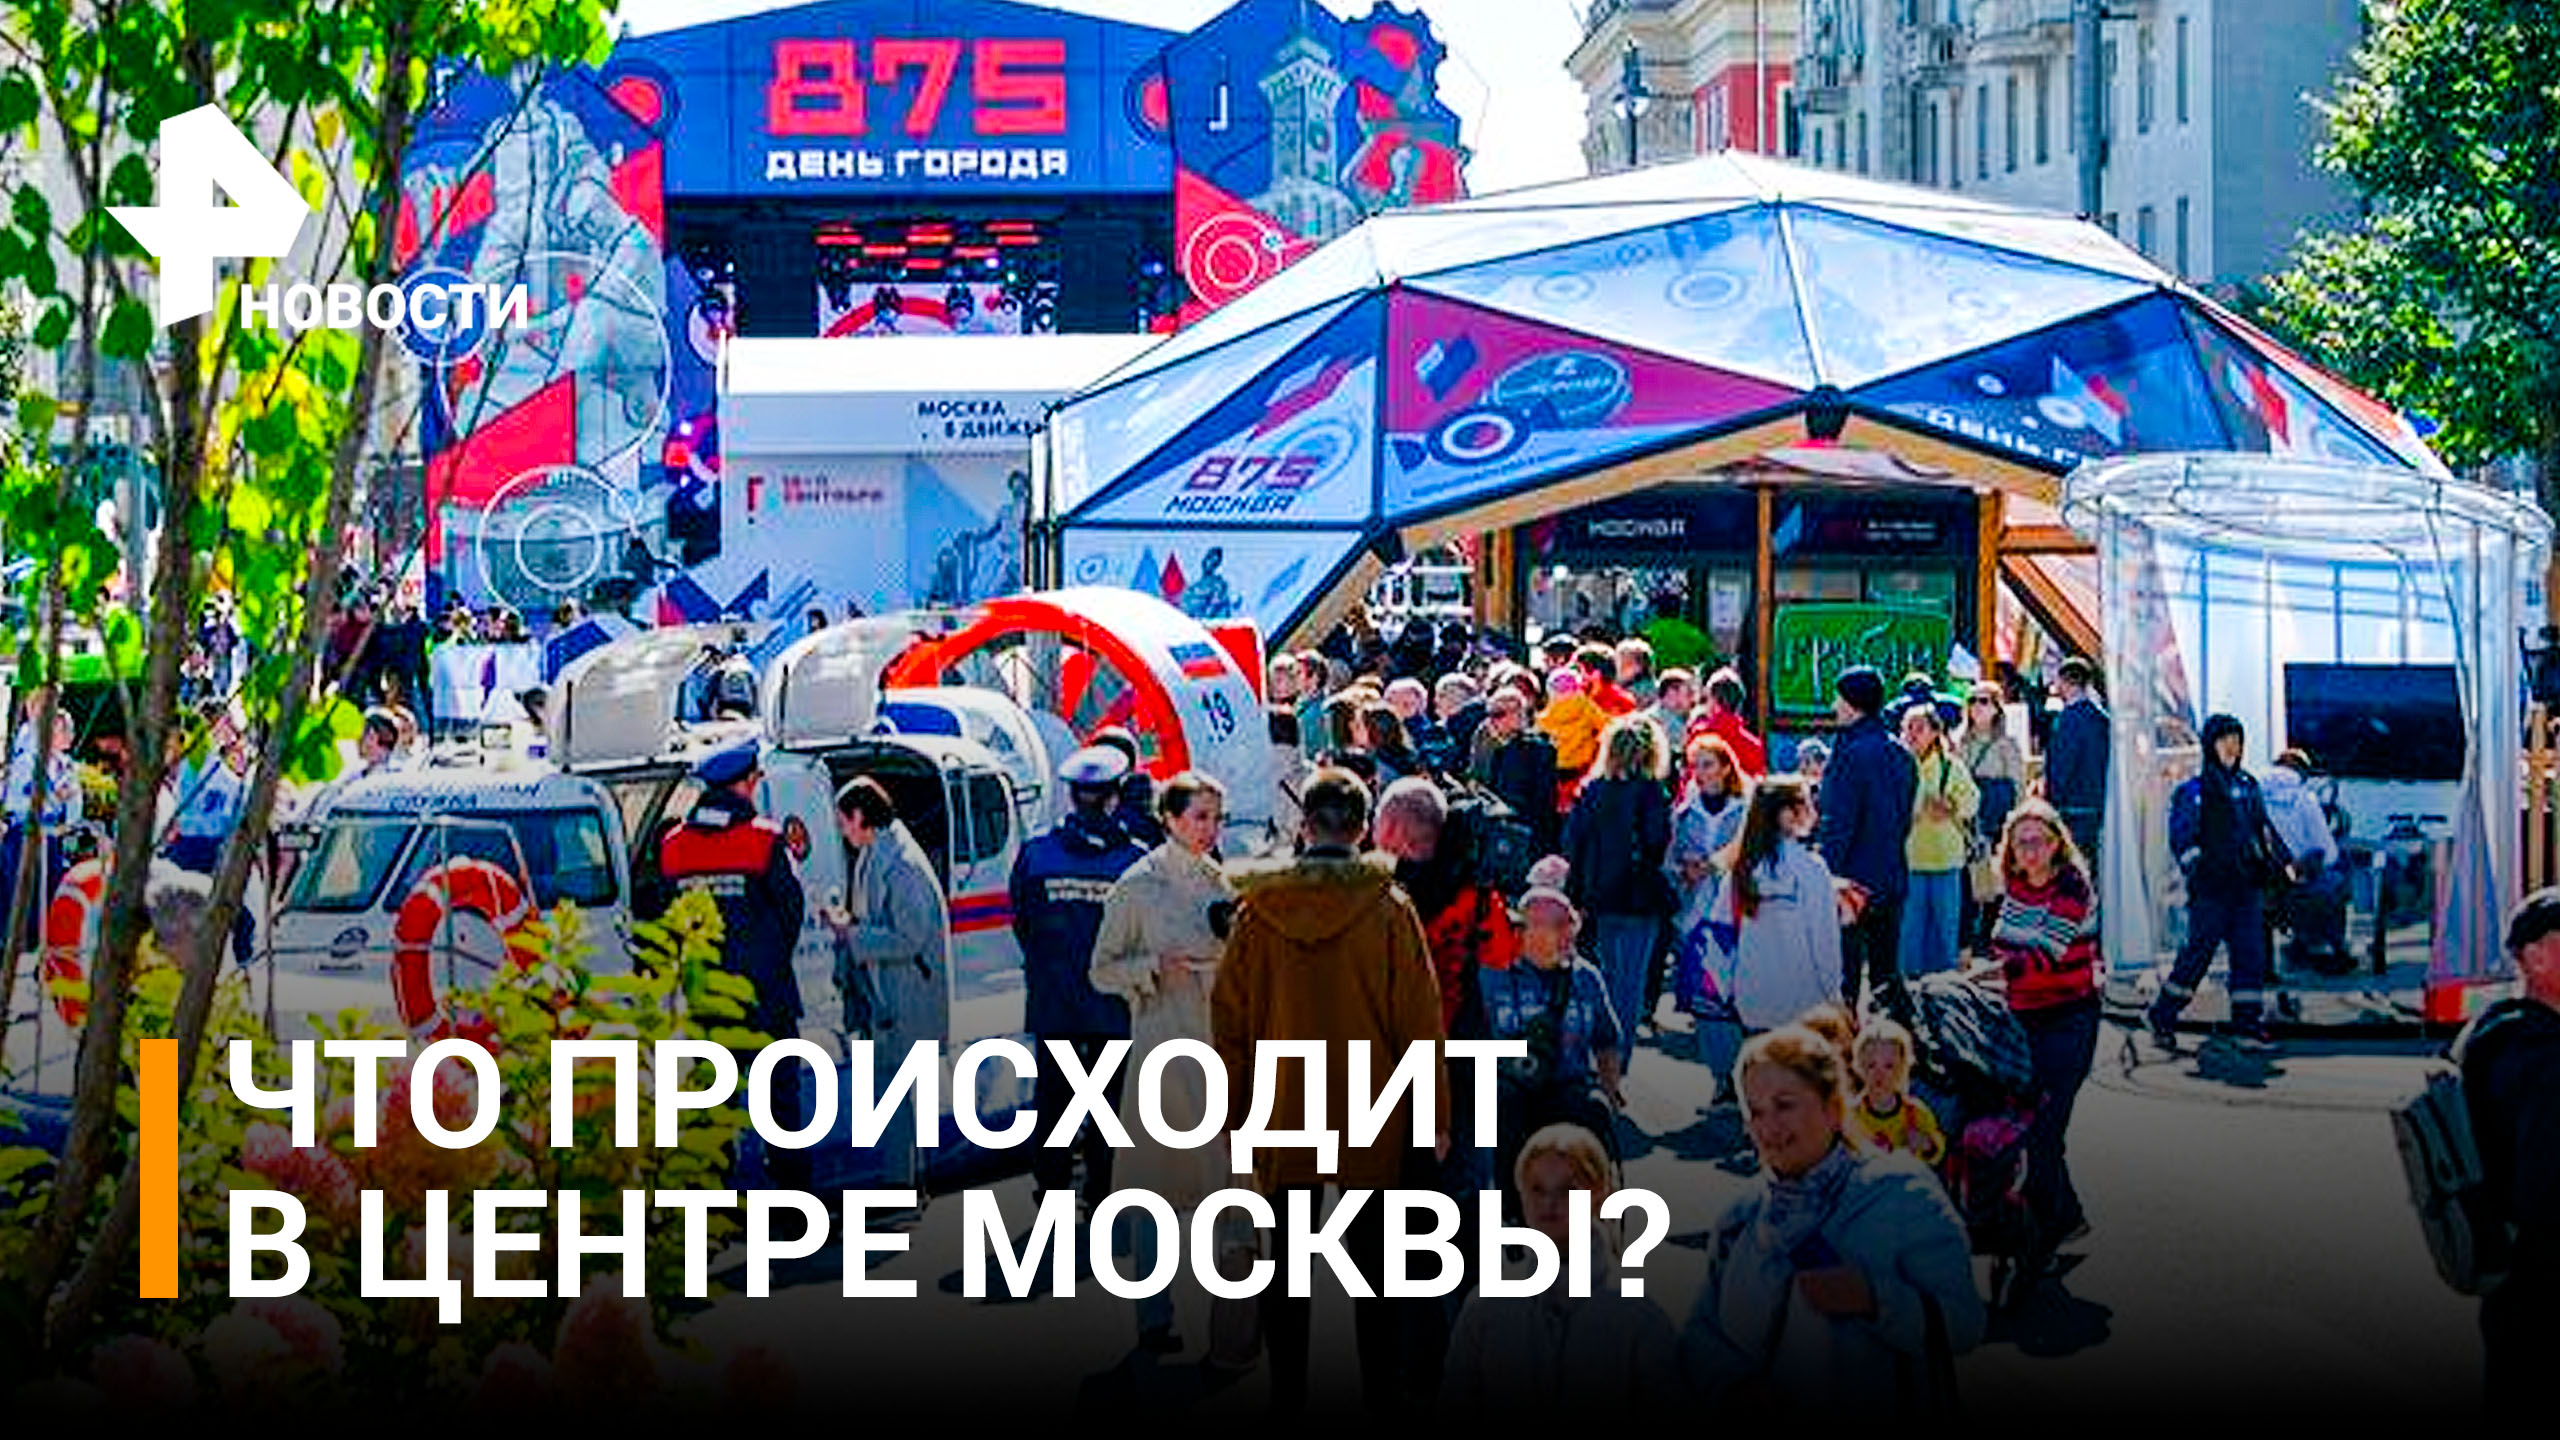 Песня зовет: где и как отметить 875-летие Москвы / РЕН Новости